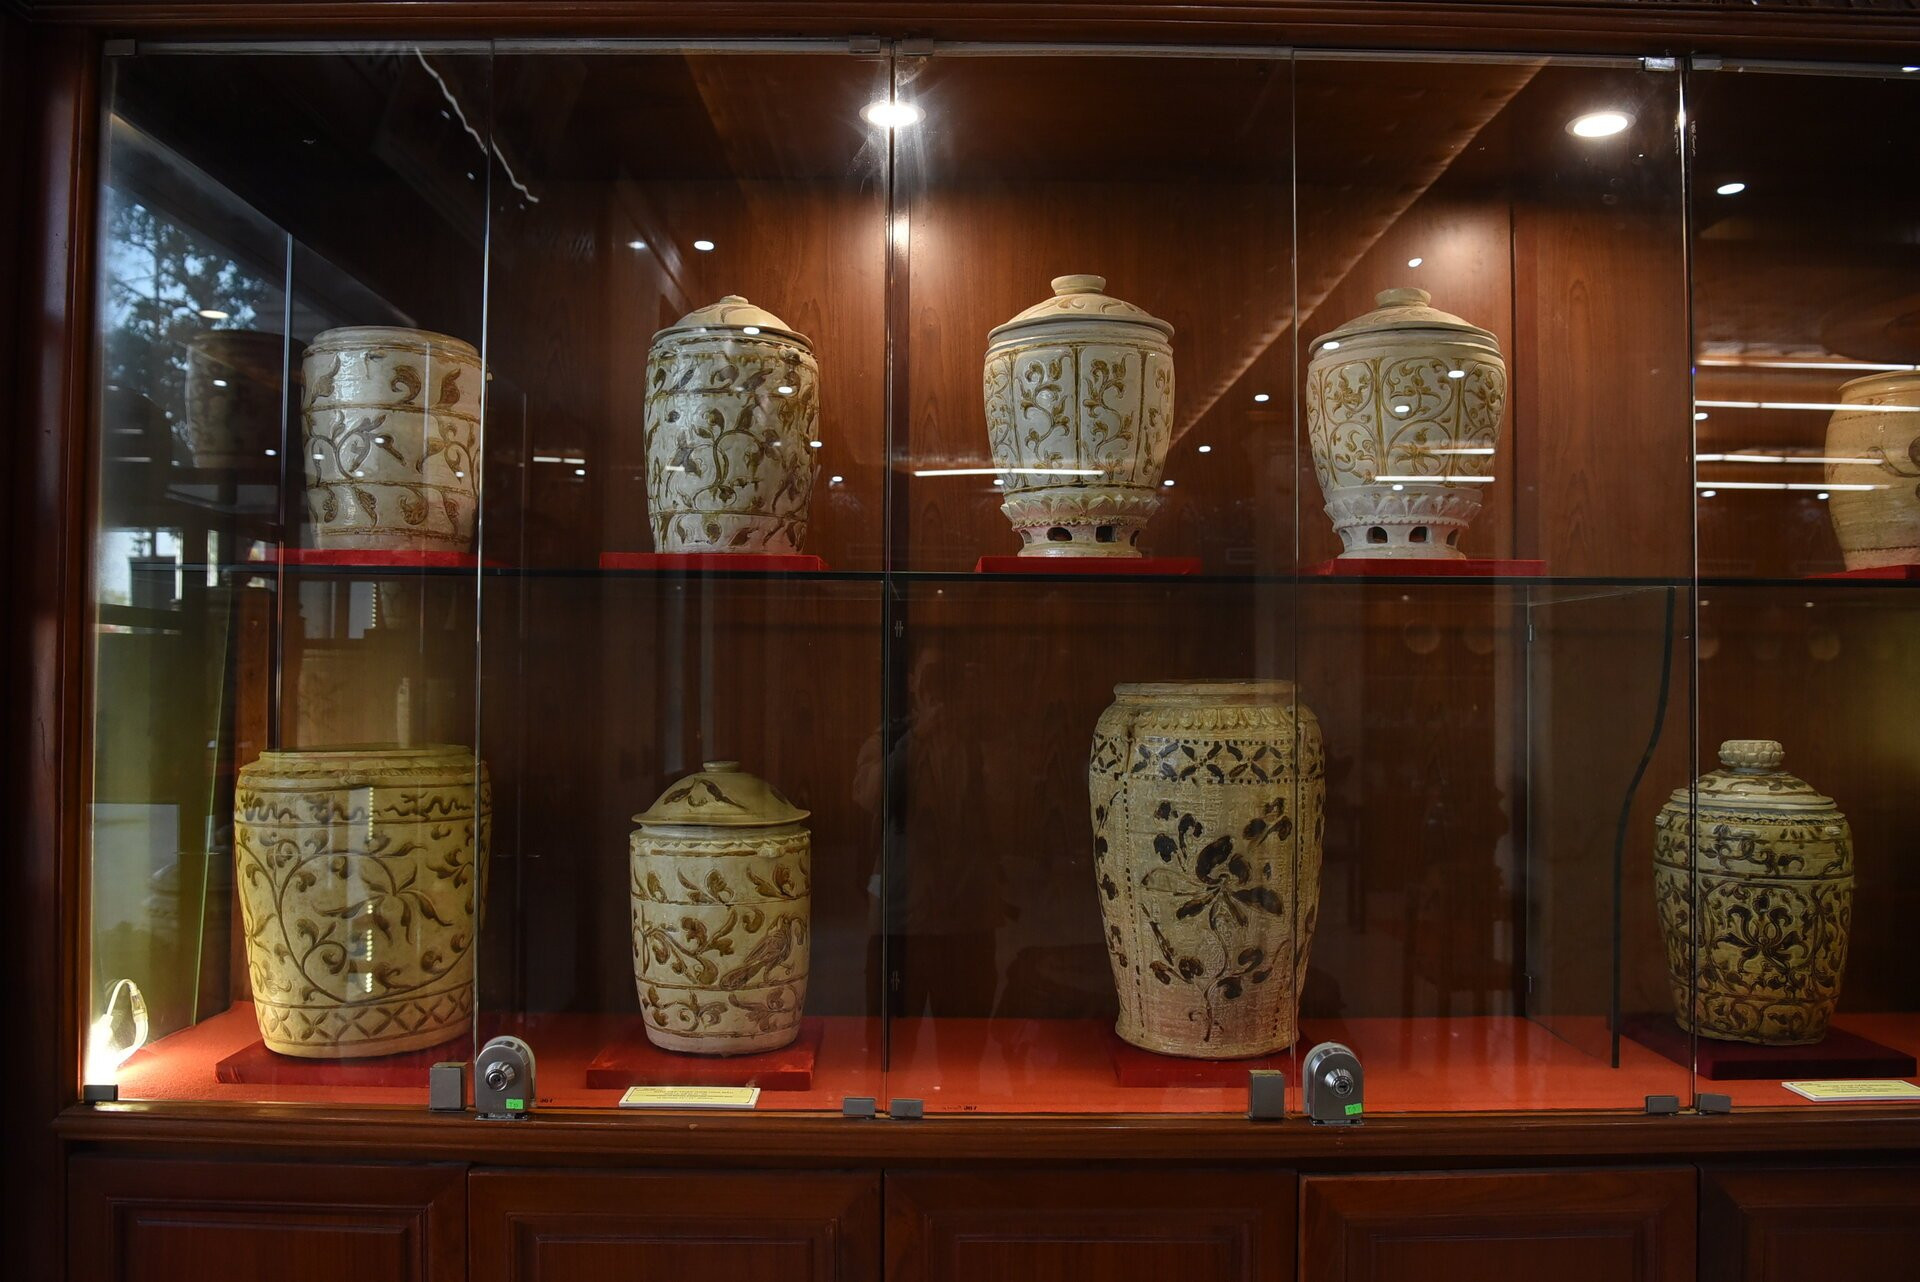 Cận cảnh ấn vàng 'Hoàng đế chi bảo' trưng bày tại bảo tàng tư nhân ở Bắc Ninh - 18